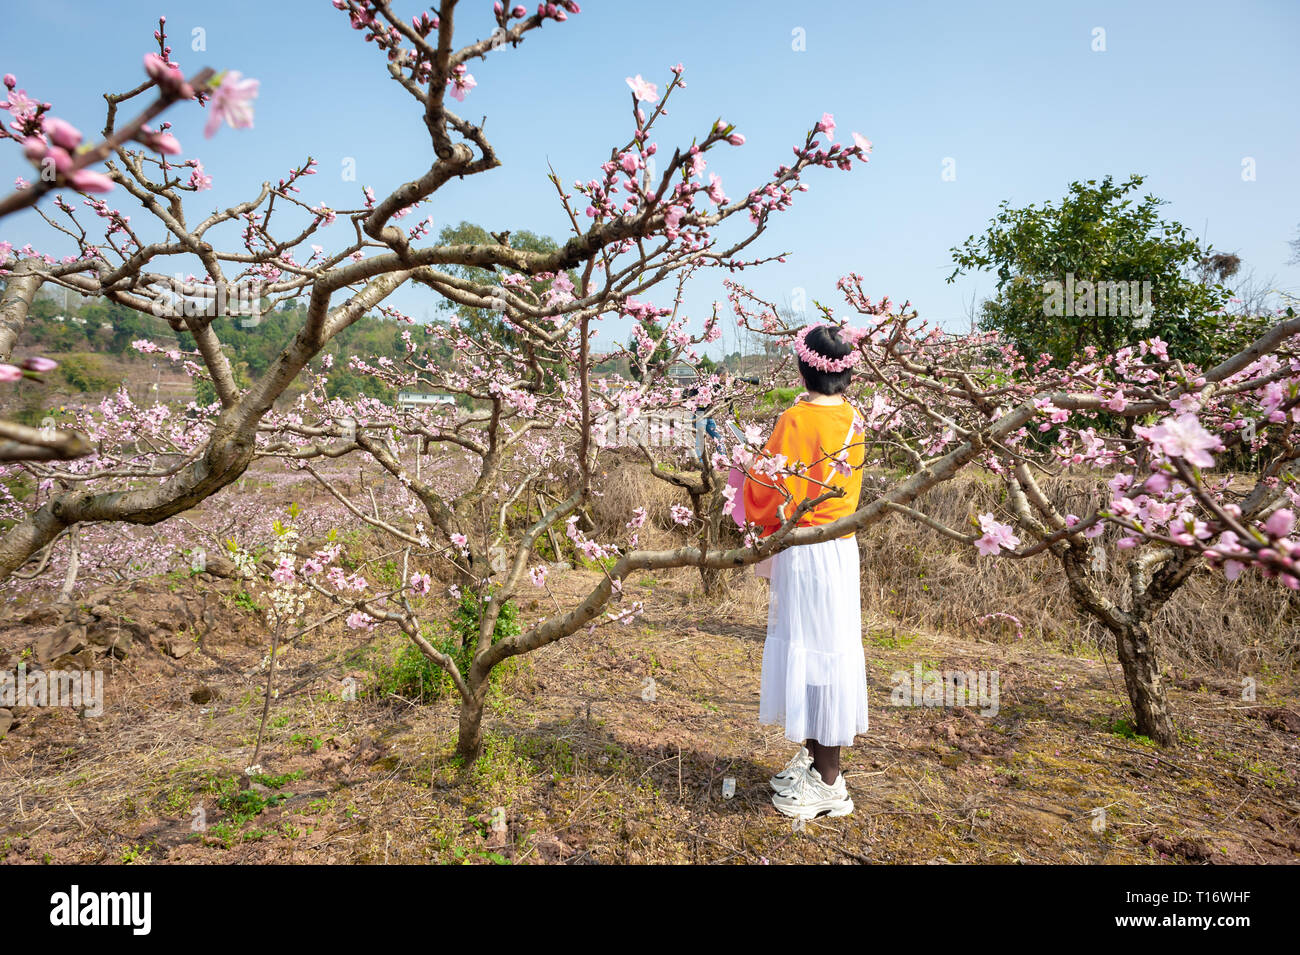 Chengdu, province du Sichuan, Chine - 20 mars 2019 : Chinese girl avec une couronne de fleurs profiter de pêchers en fleurs, arbres au printemps en LongQuanYi montagnes. Banque D'Images